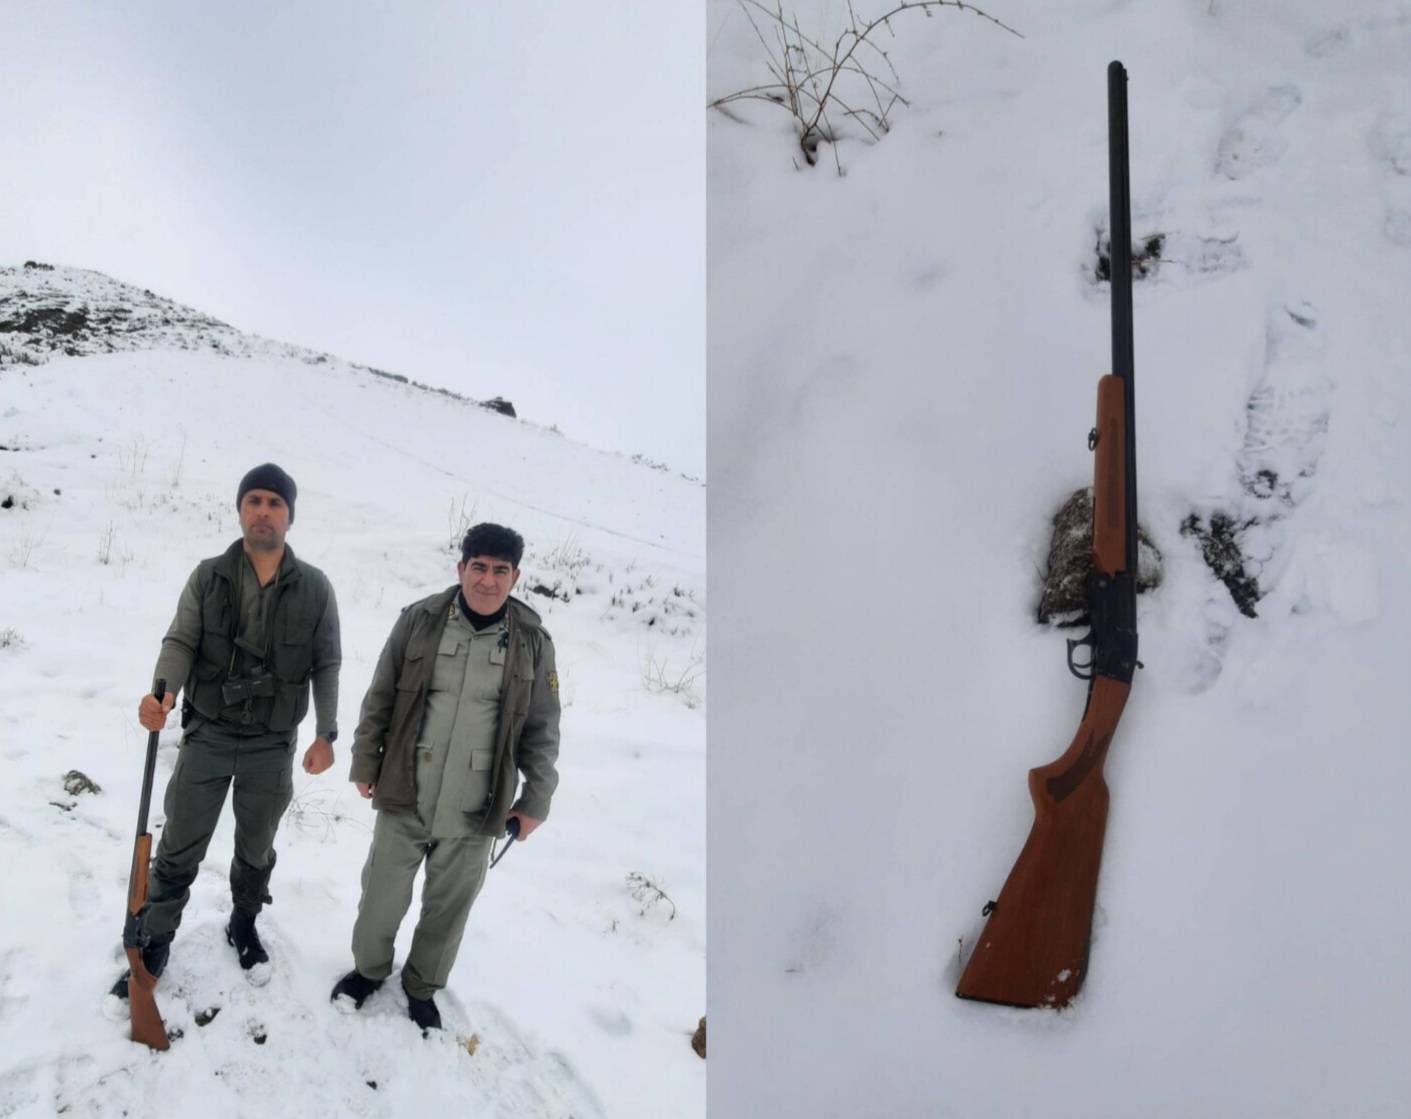 کشف و ضبط اسلحه شکاری غیرمجاز از متخلفین در ارتفاعات کوهستانی منطقه نازلو